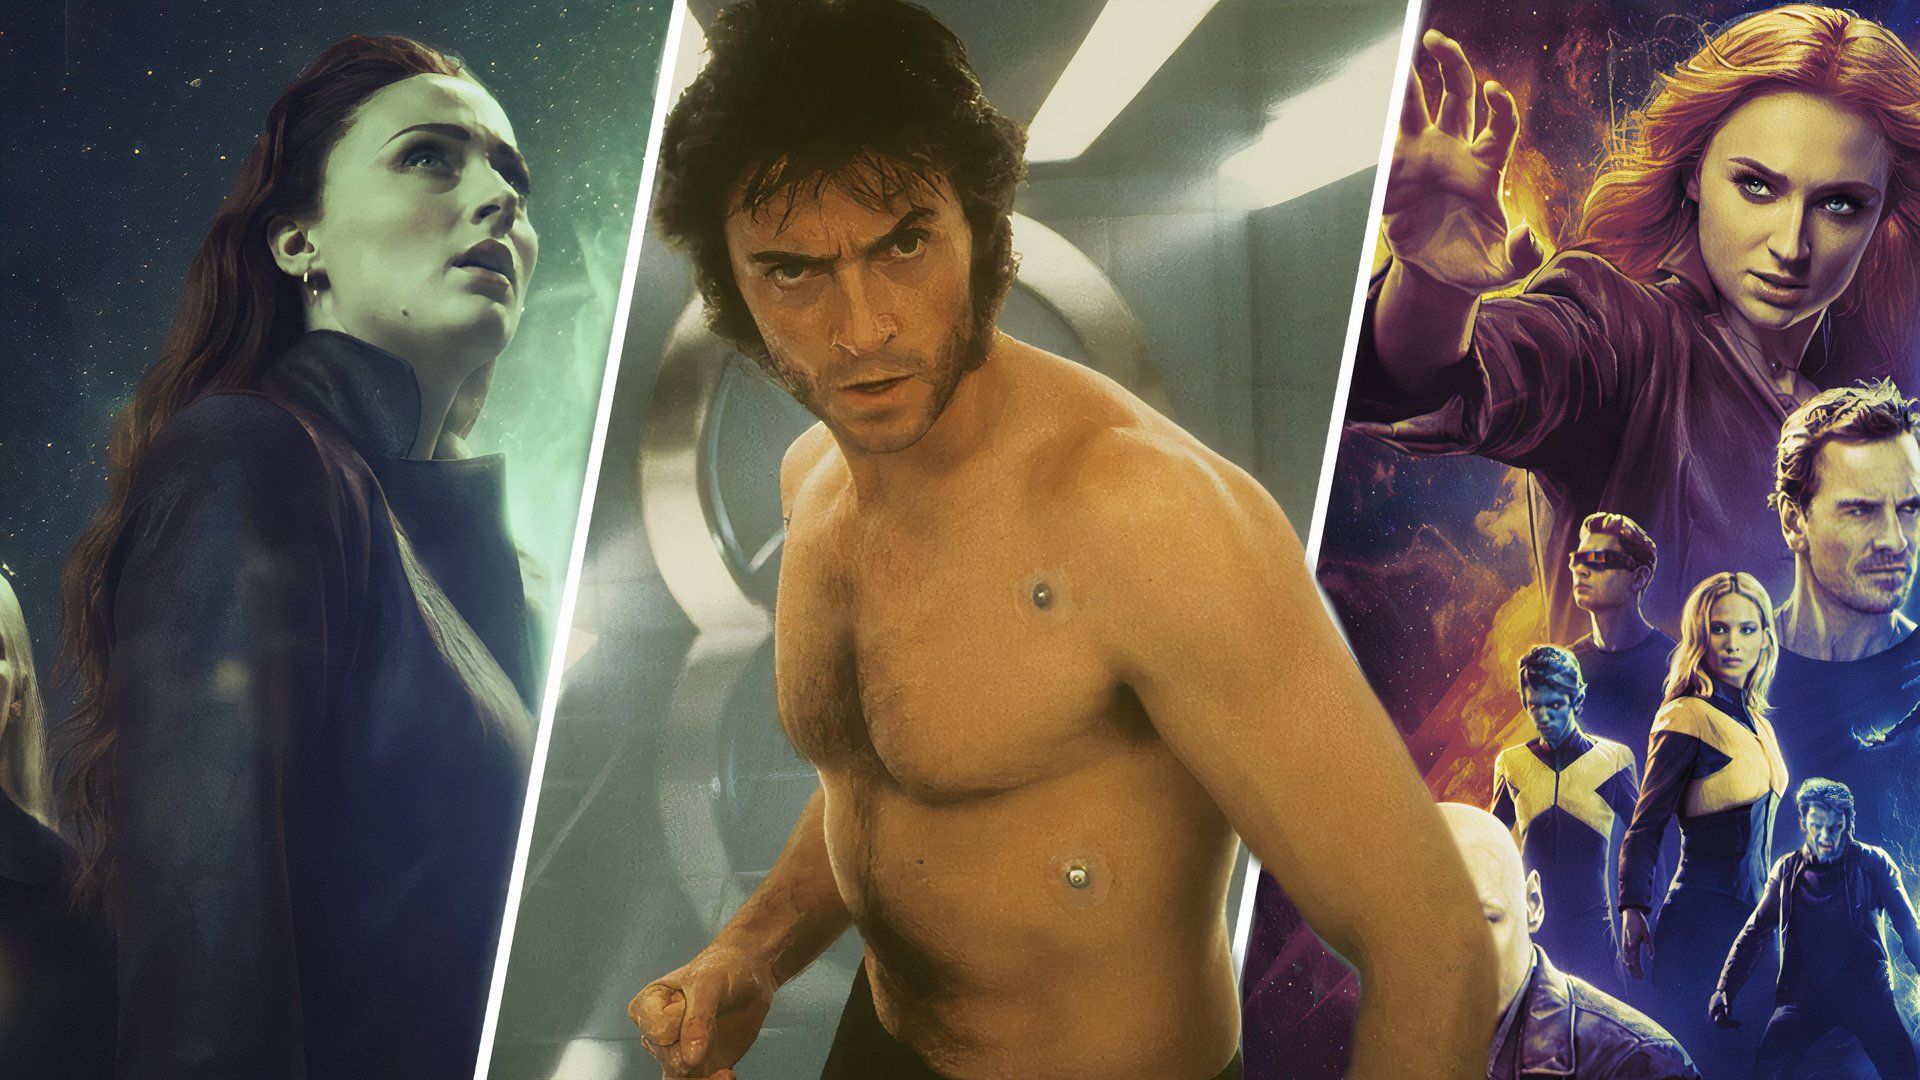 An edited image of Hugh Jackman as Wolverine alongside Sophie Turner as Jean Grey in Dark Phoenix